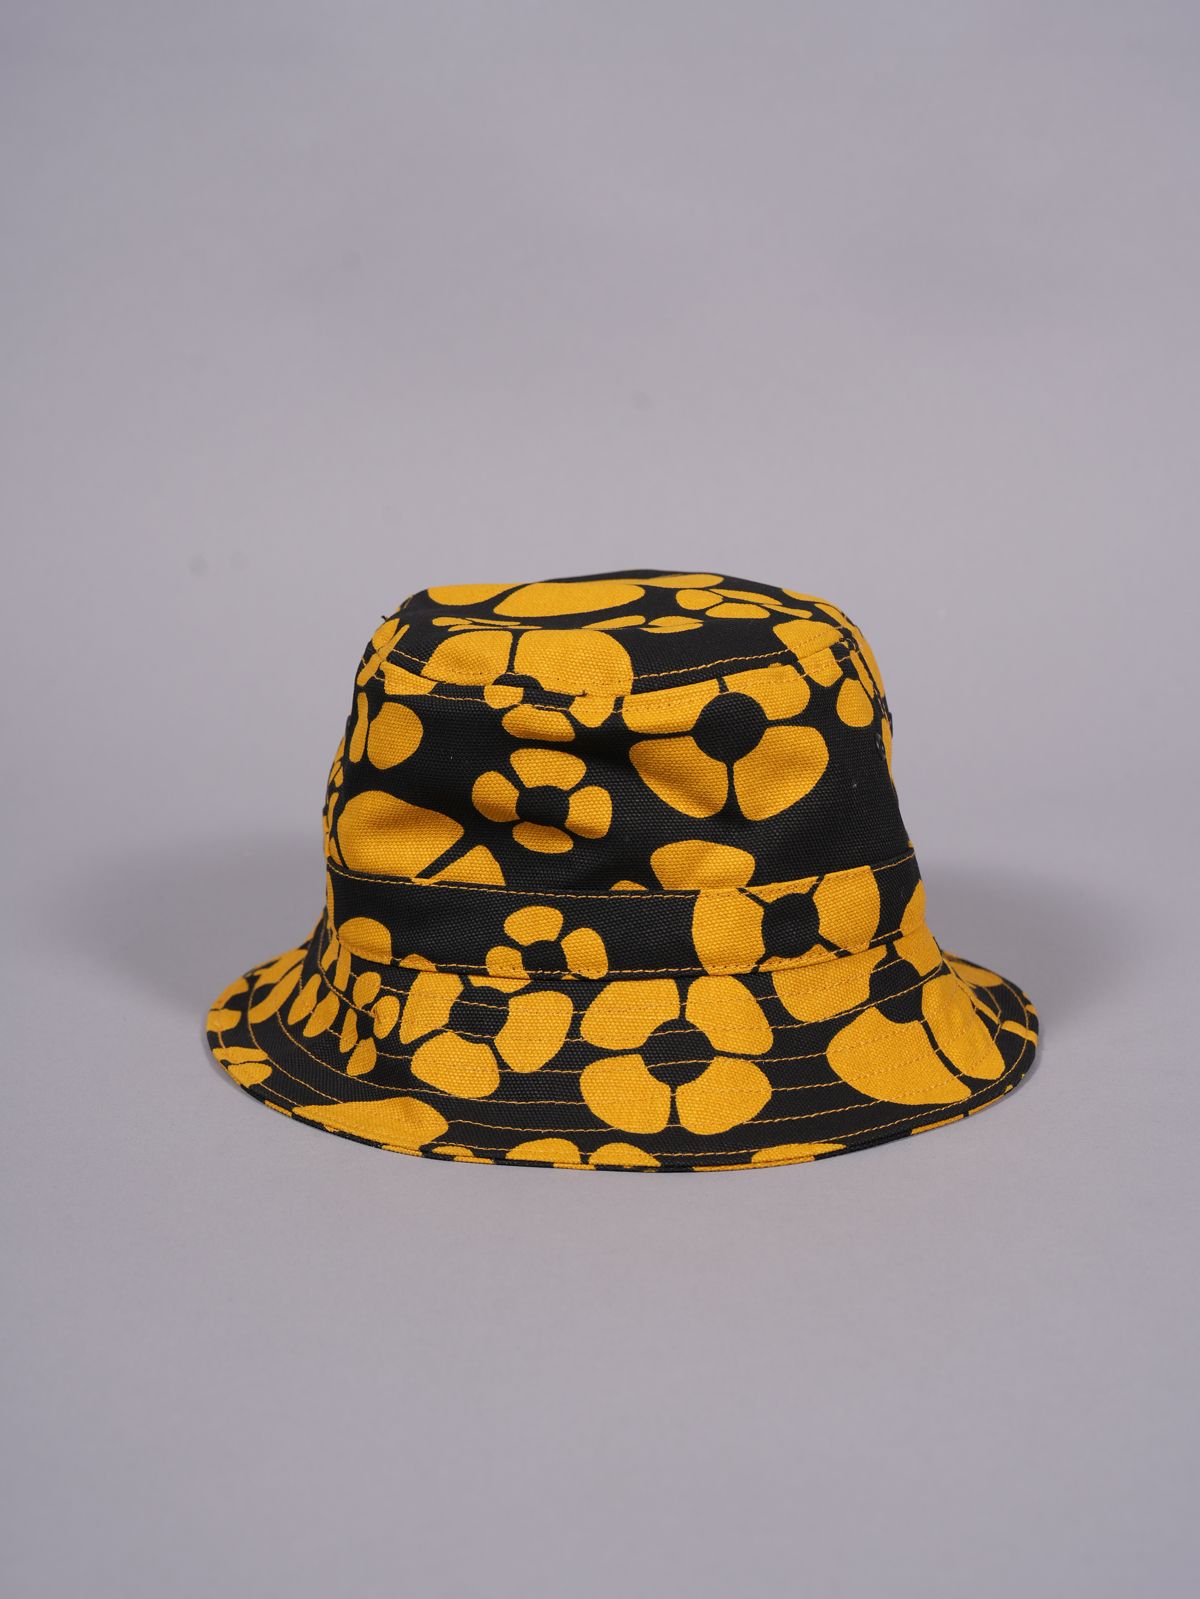 【残りわずか】 MARNI X CARHARTT WIP - YELLOW BUCKET HAT